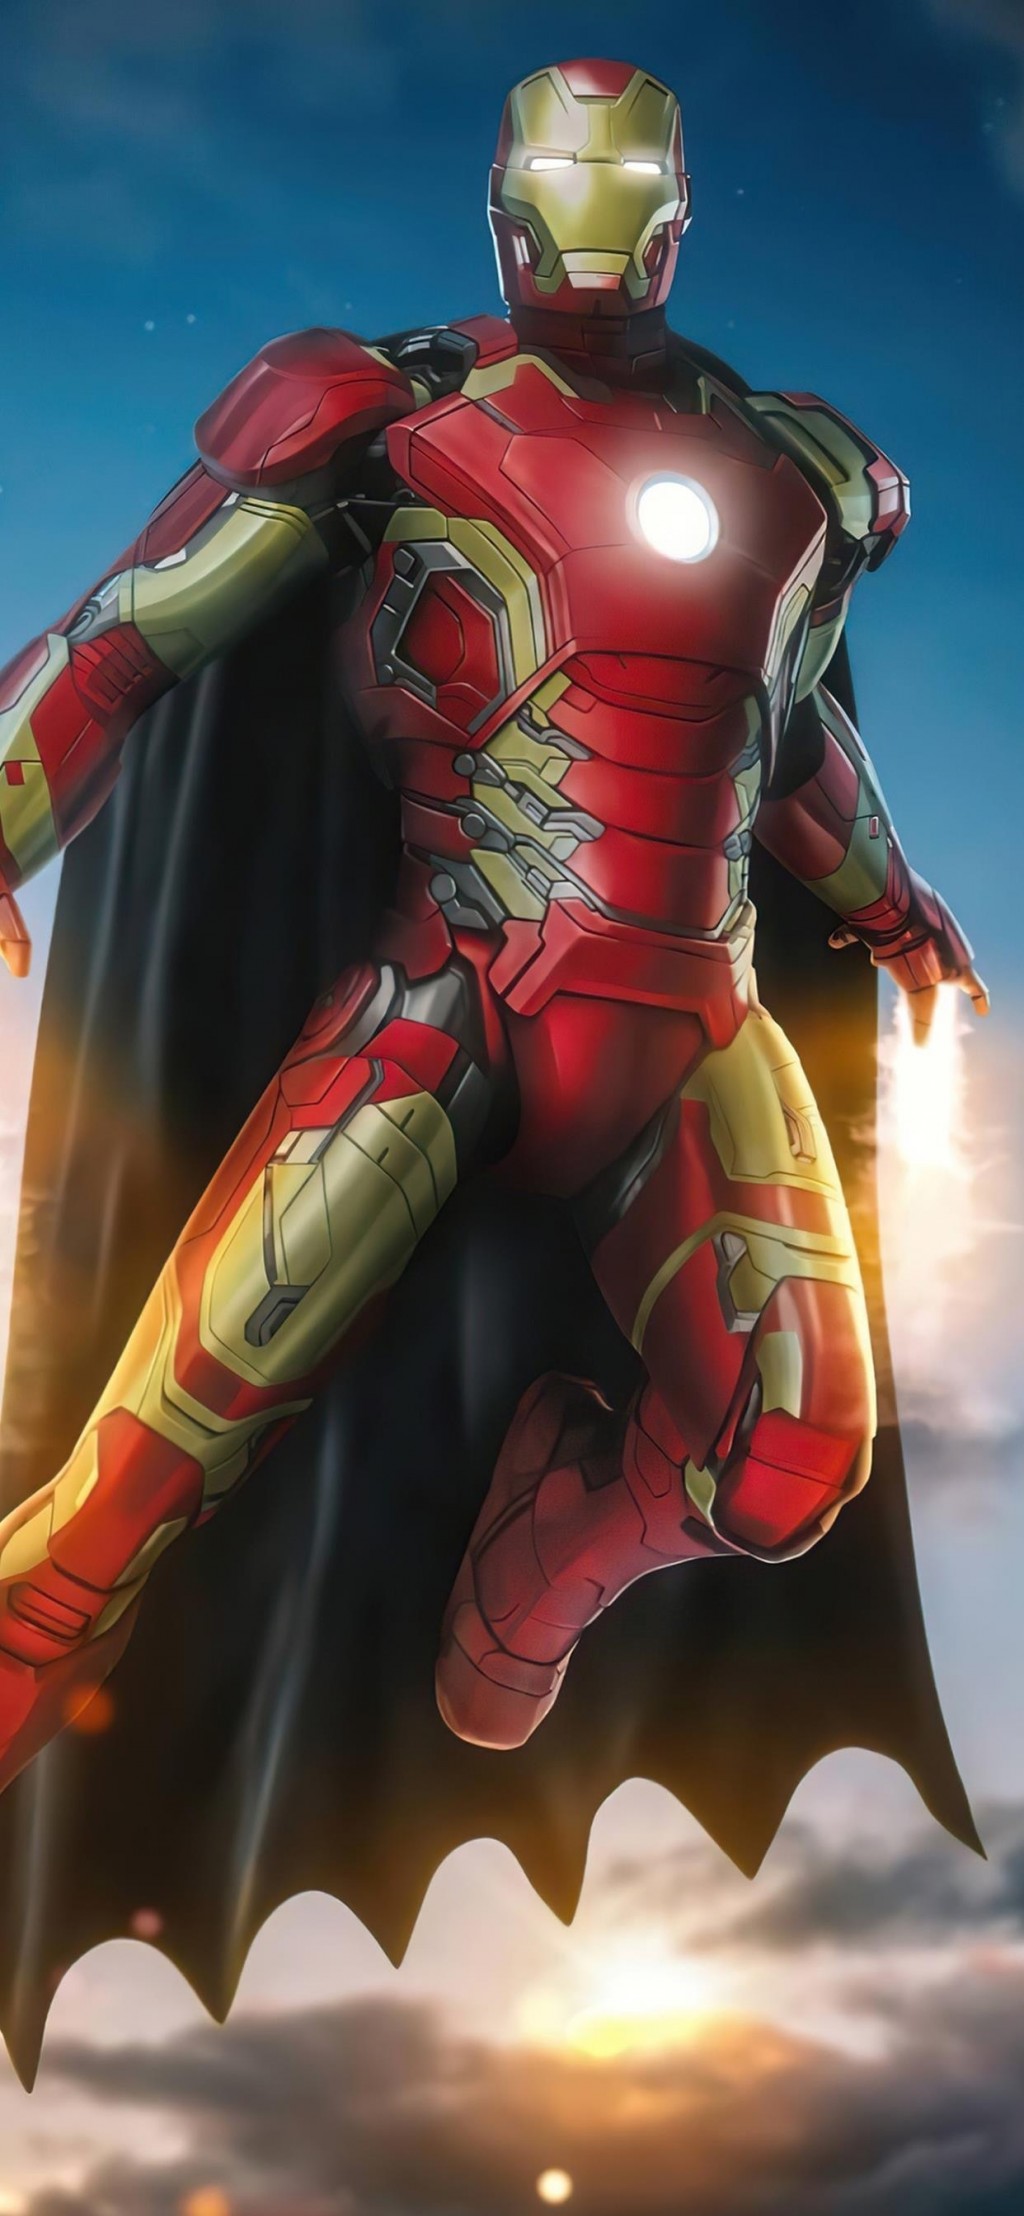 漫威超级英雄钢铁侠酷帅手机壁纸